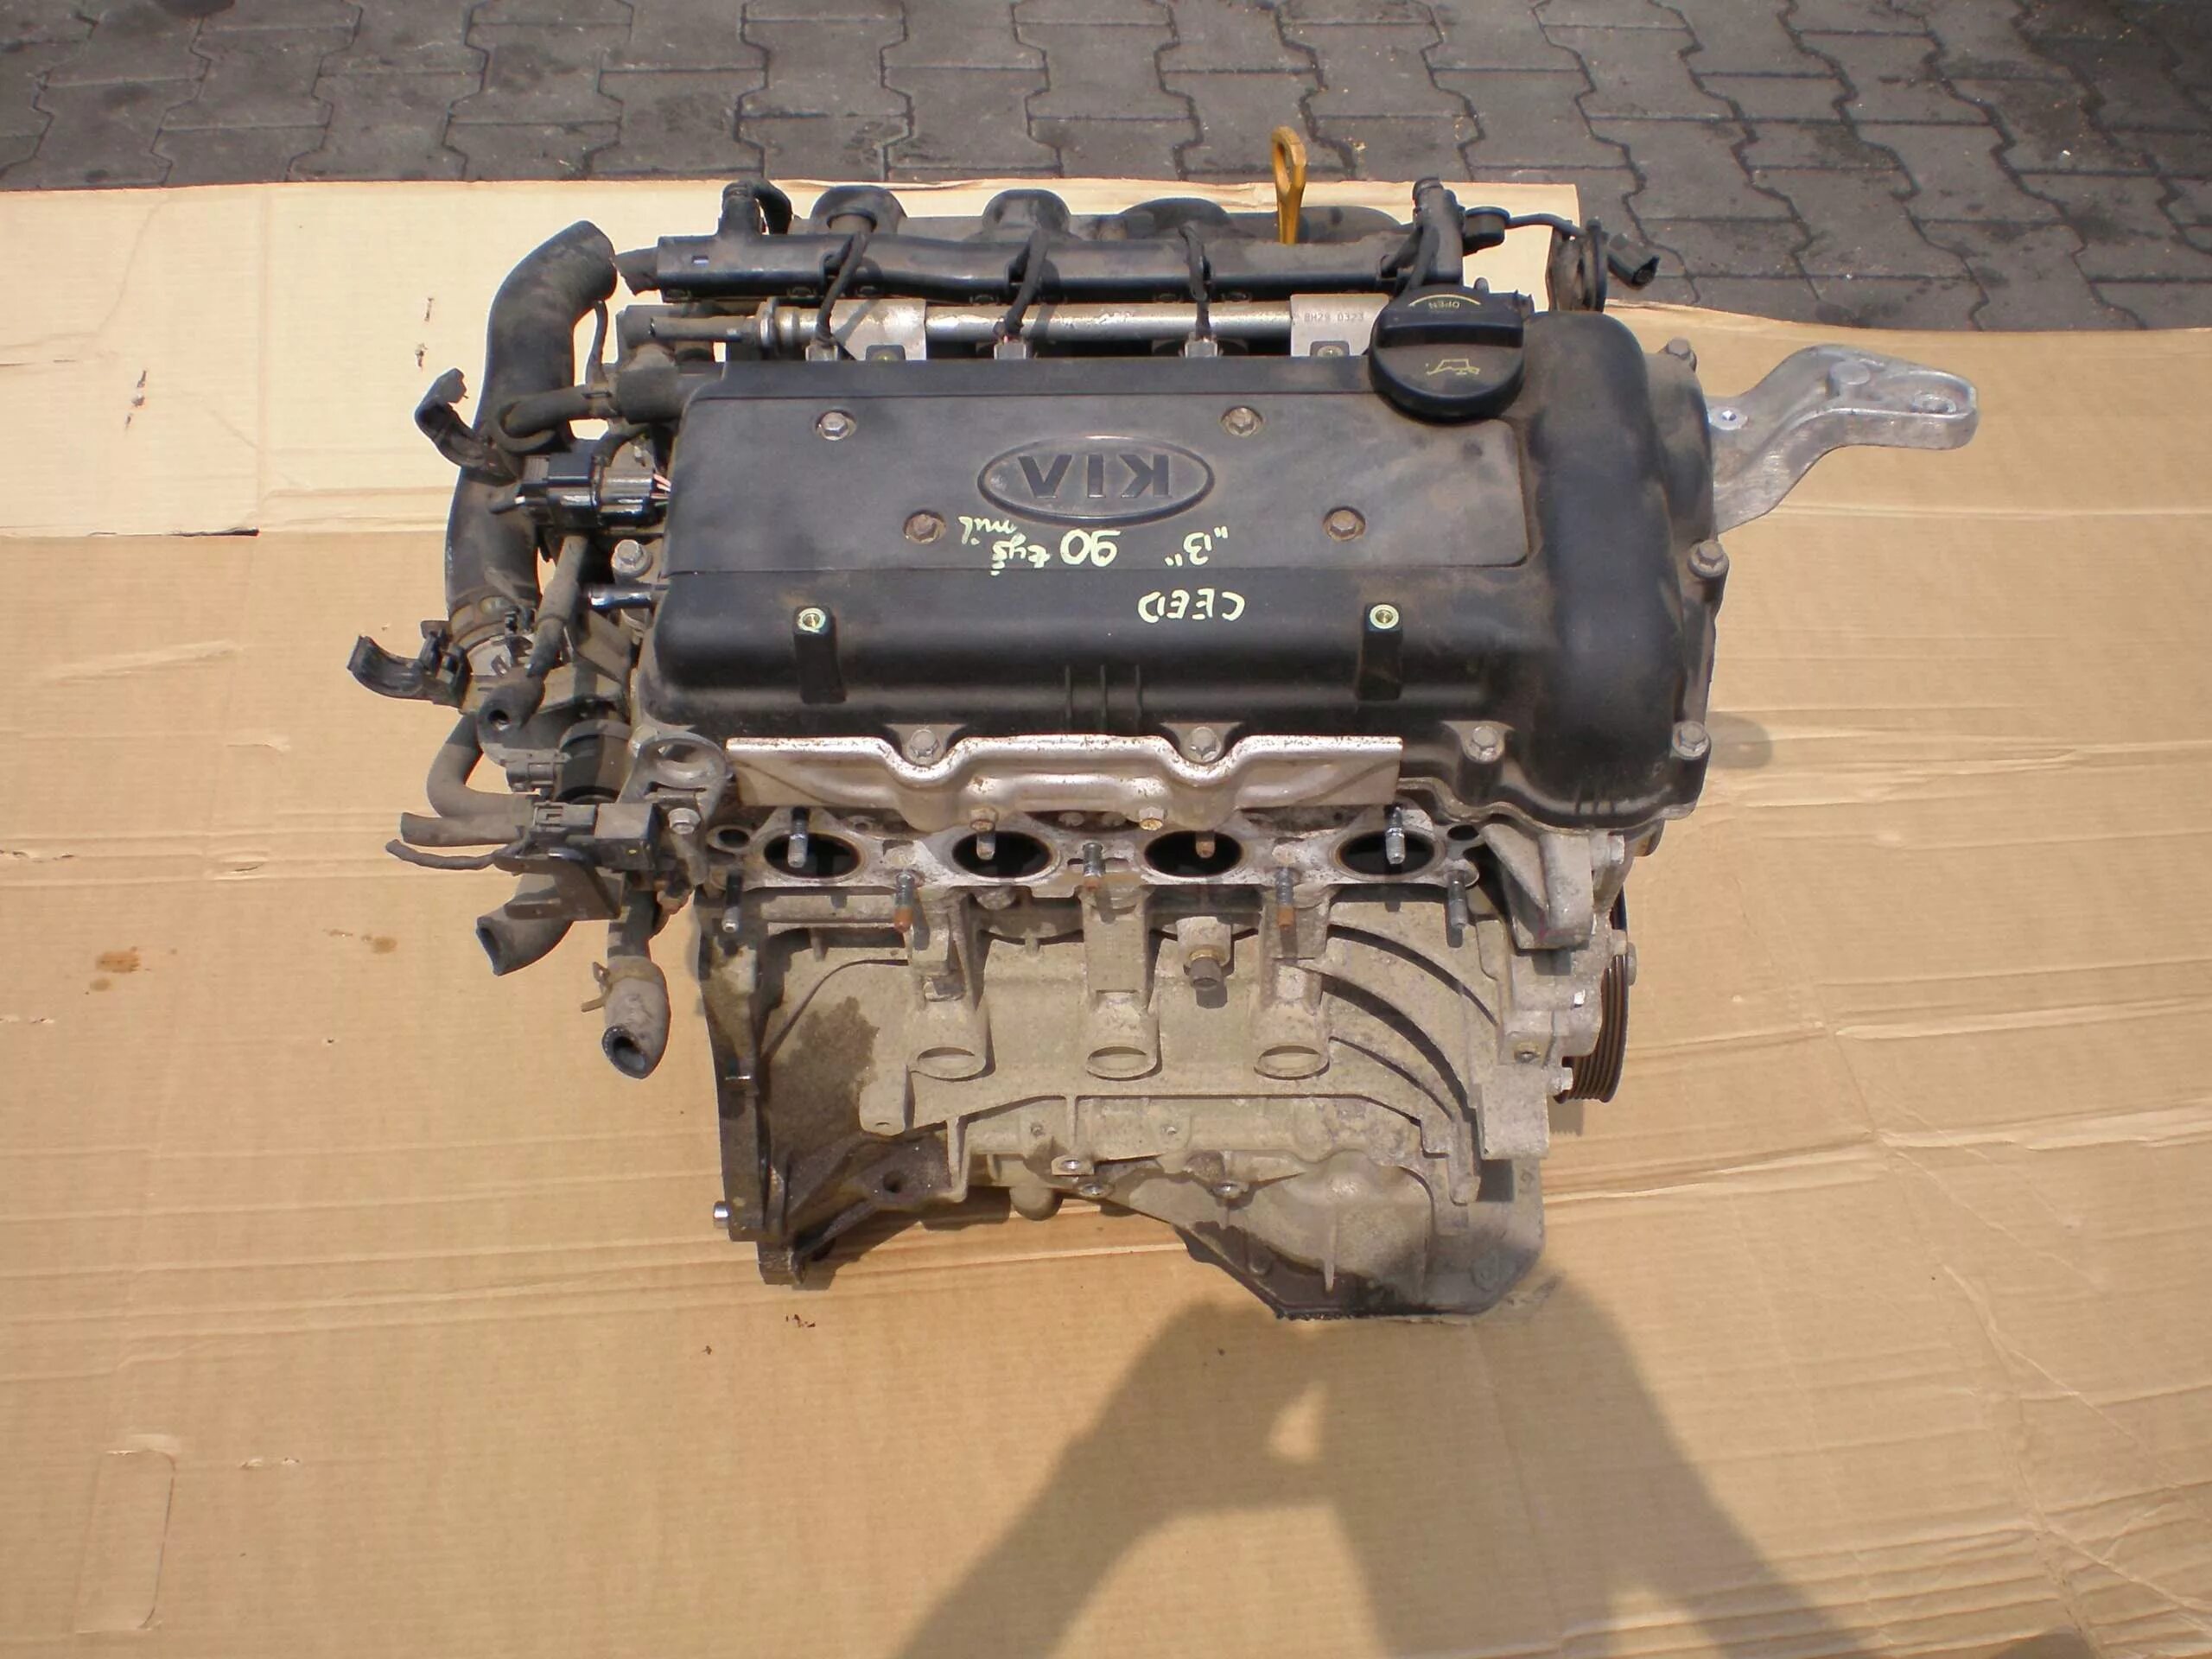 Купить мотор хендай. Двигатель Хендай ай 30. Модель двигателя Хундай ай 30. Хендай ай 30 2009 года 1.4 ДВС. Двигатель Хендай ай 30 GLSMT.